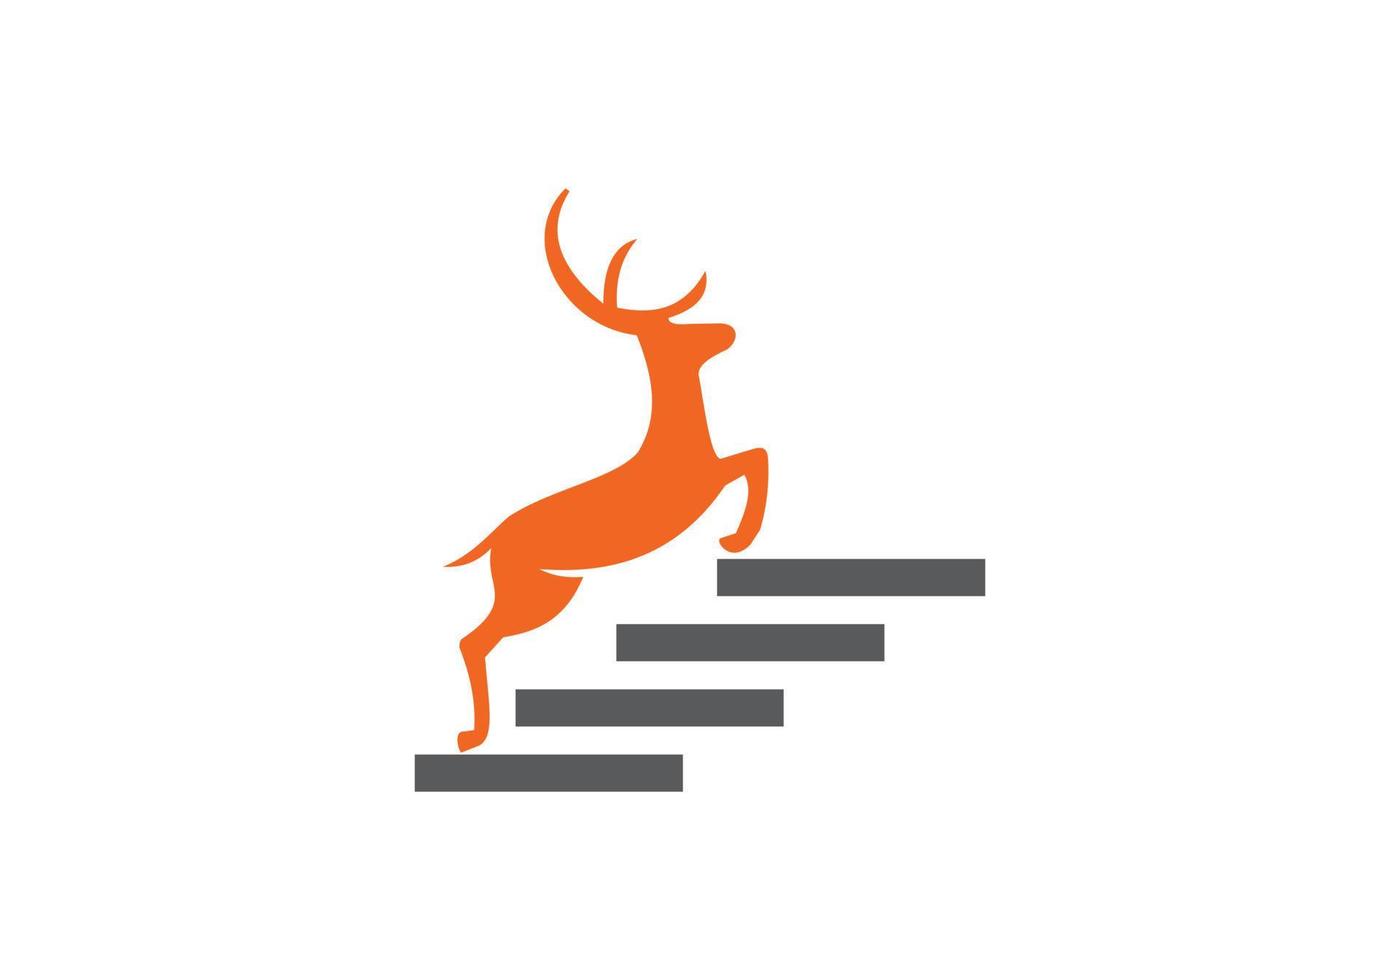 este es un diseño de logotipo de ciervo vector